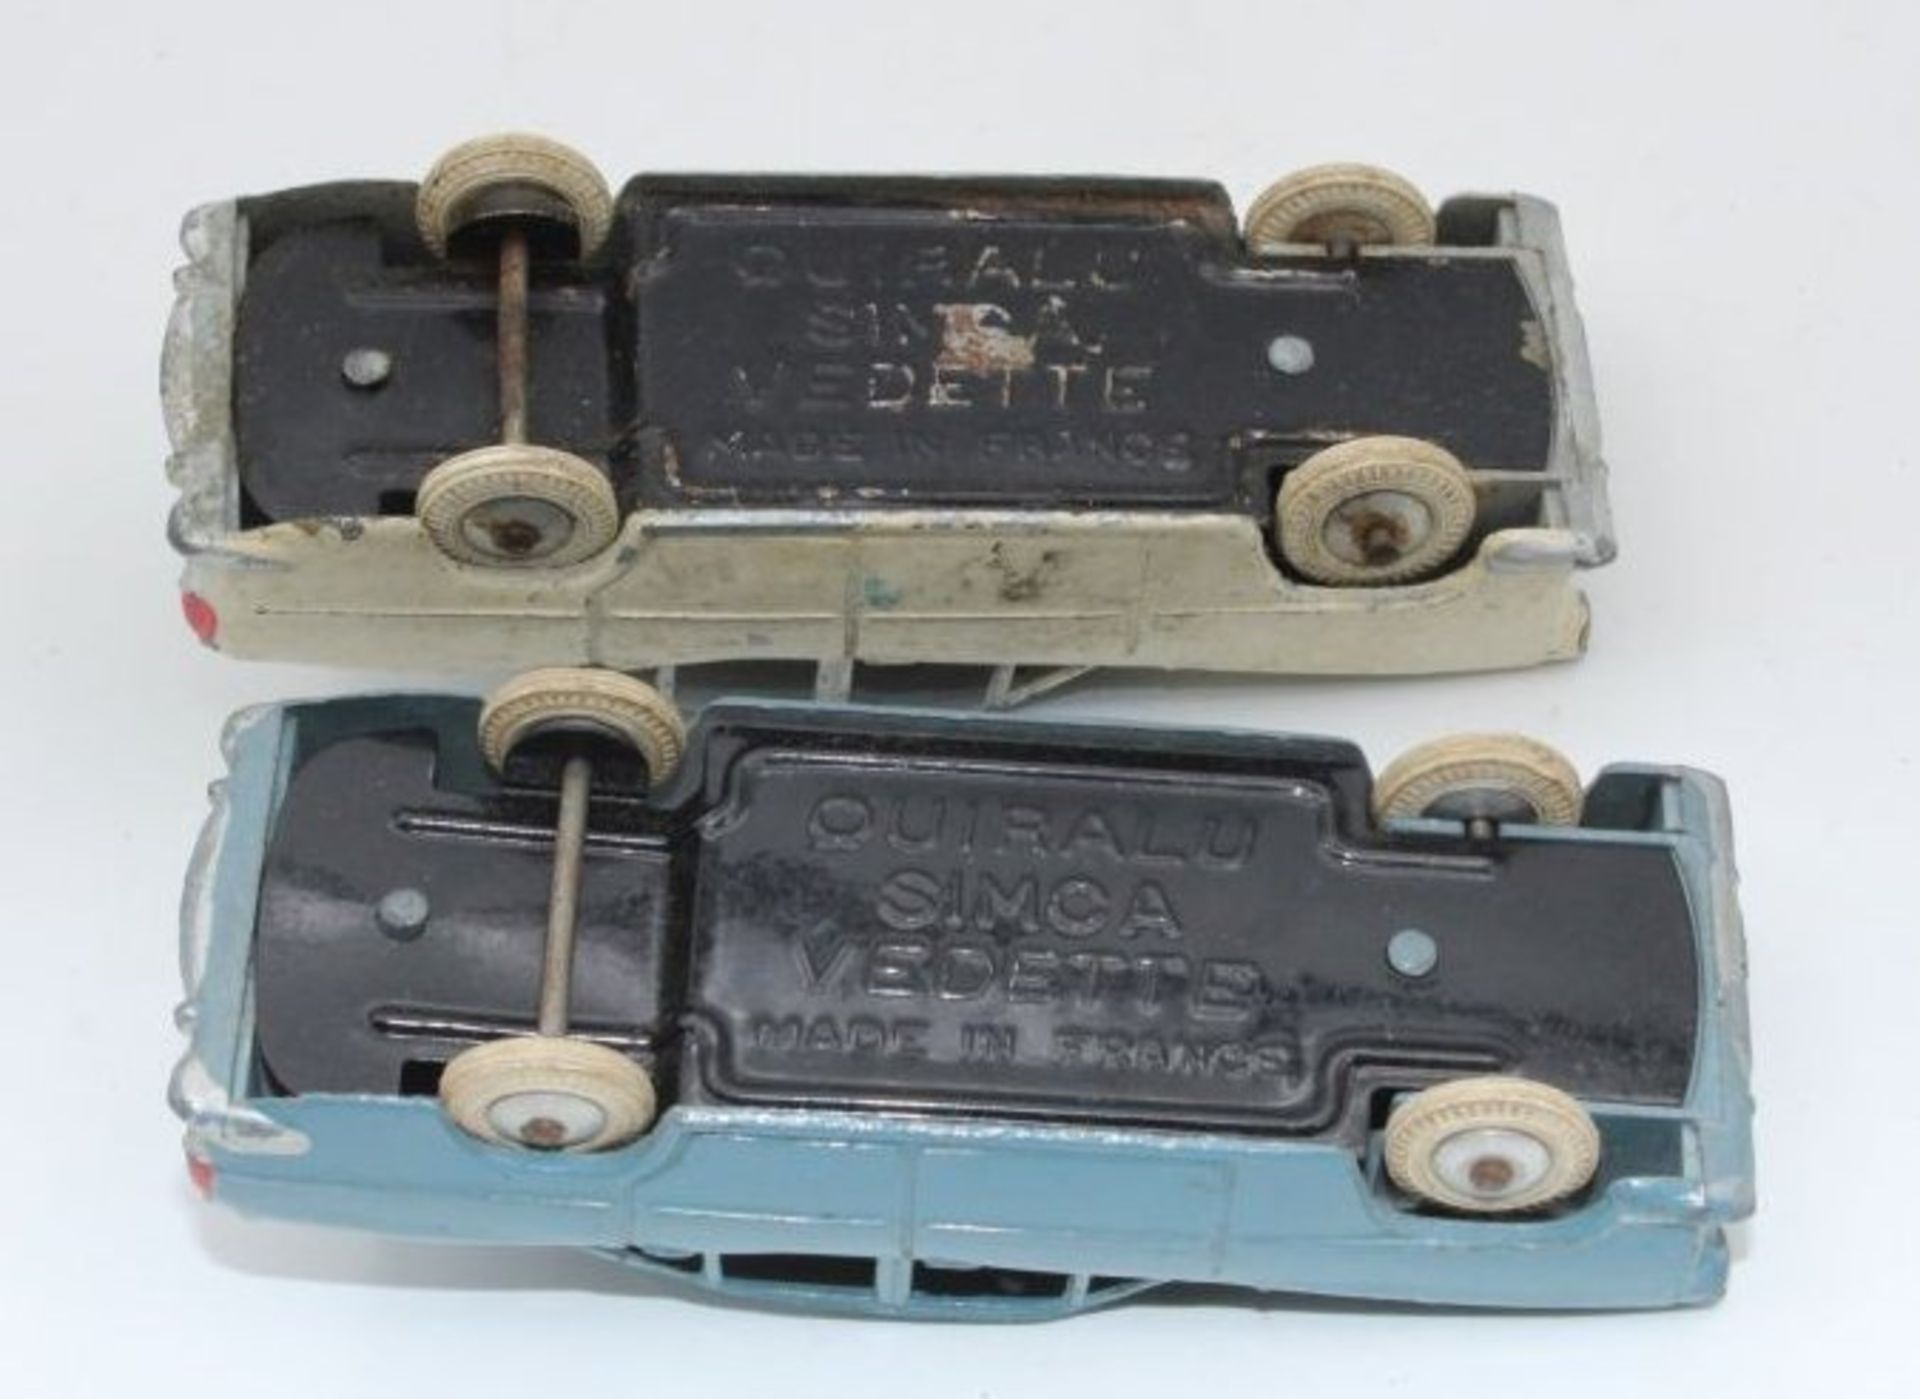 2x Druckguss-Modelle, Quiralu Simca Vedette, Frankreich, unterschiedliche Erhaltungen, H-3,5cm L- - Bild 2 aus 2